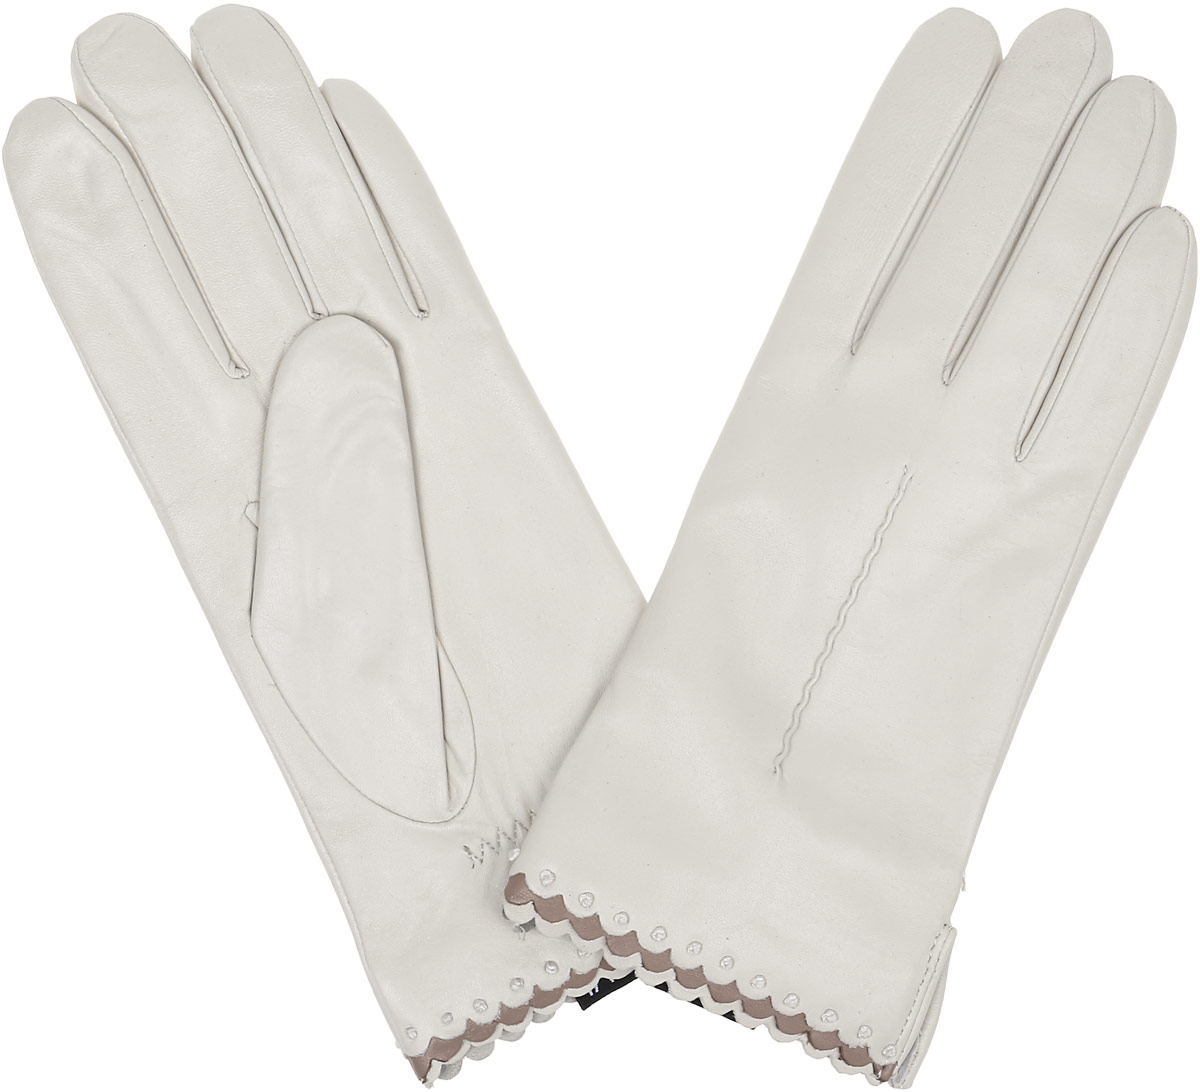 Нижние перчатки купить. Перчатки женские fute gl 1215. Перчатки Fabretti баллониевые. Перчатки respect женские rsrh80-05. Белые кожаные перчатки женские.